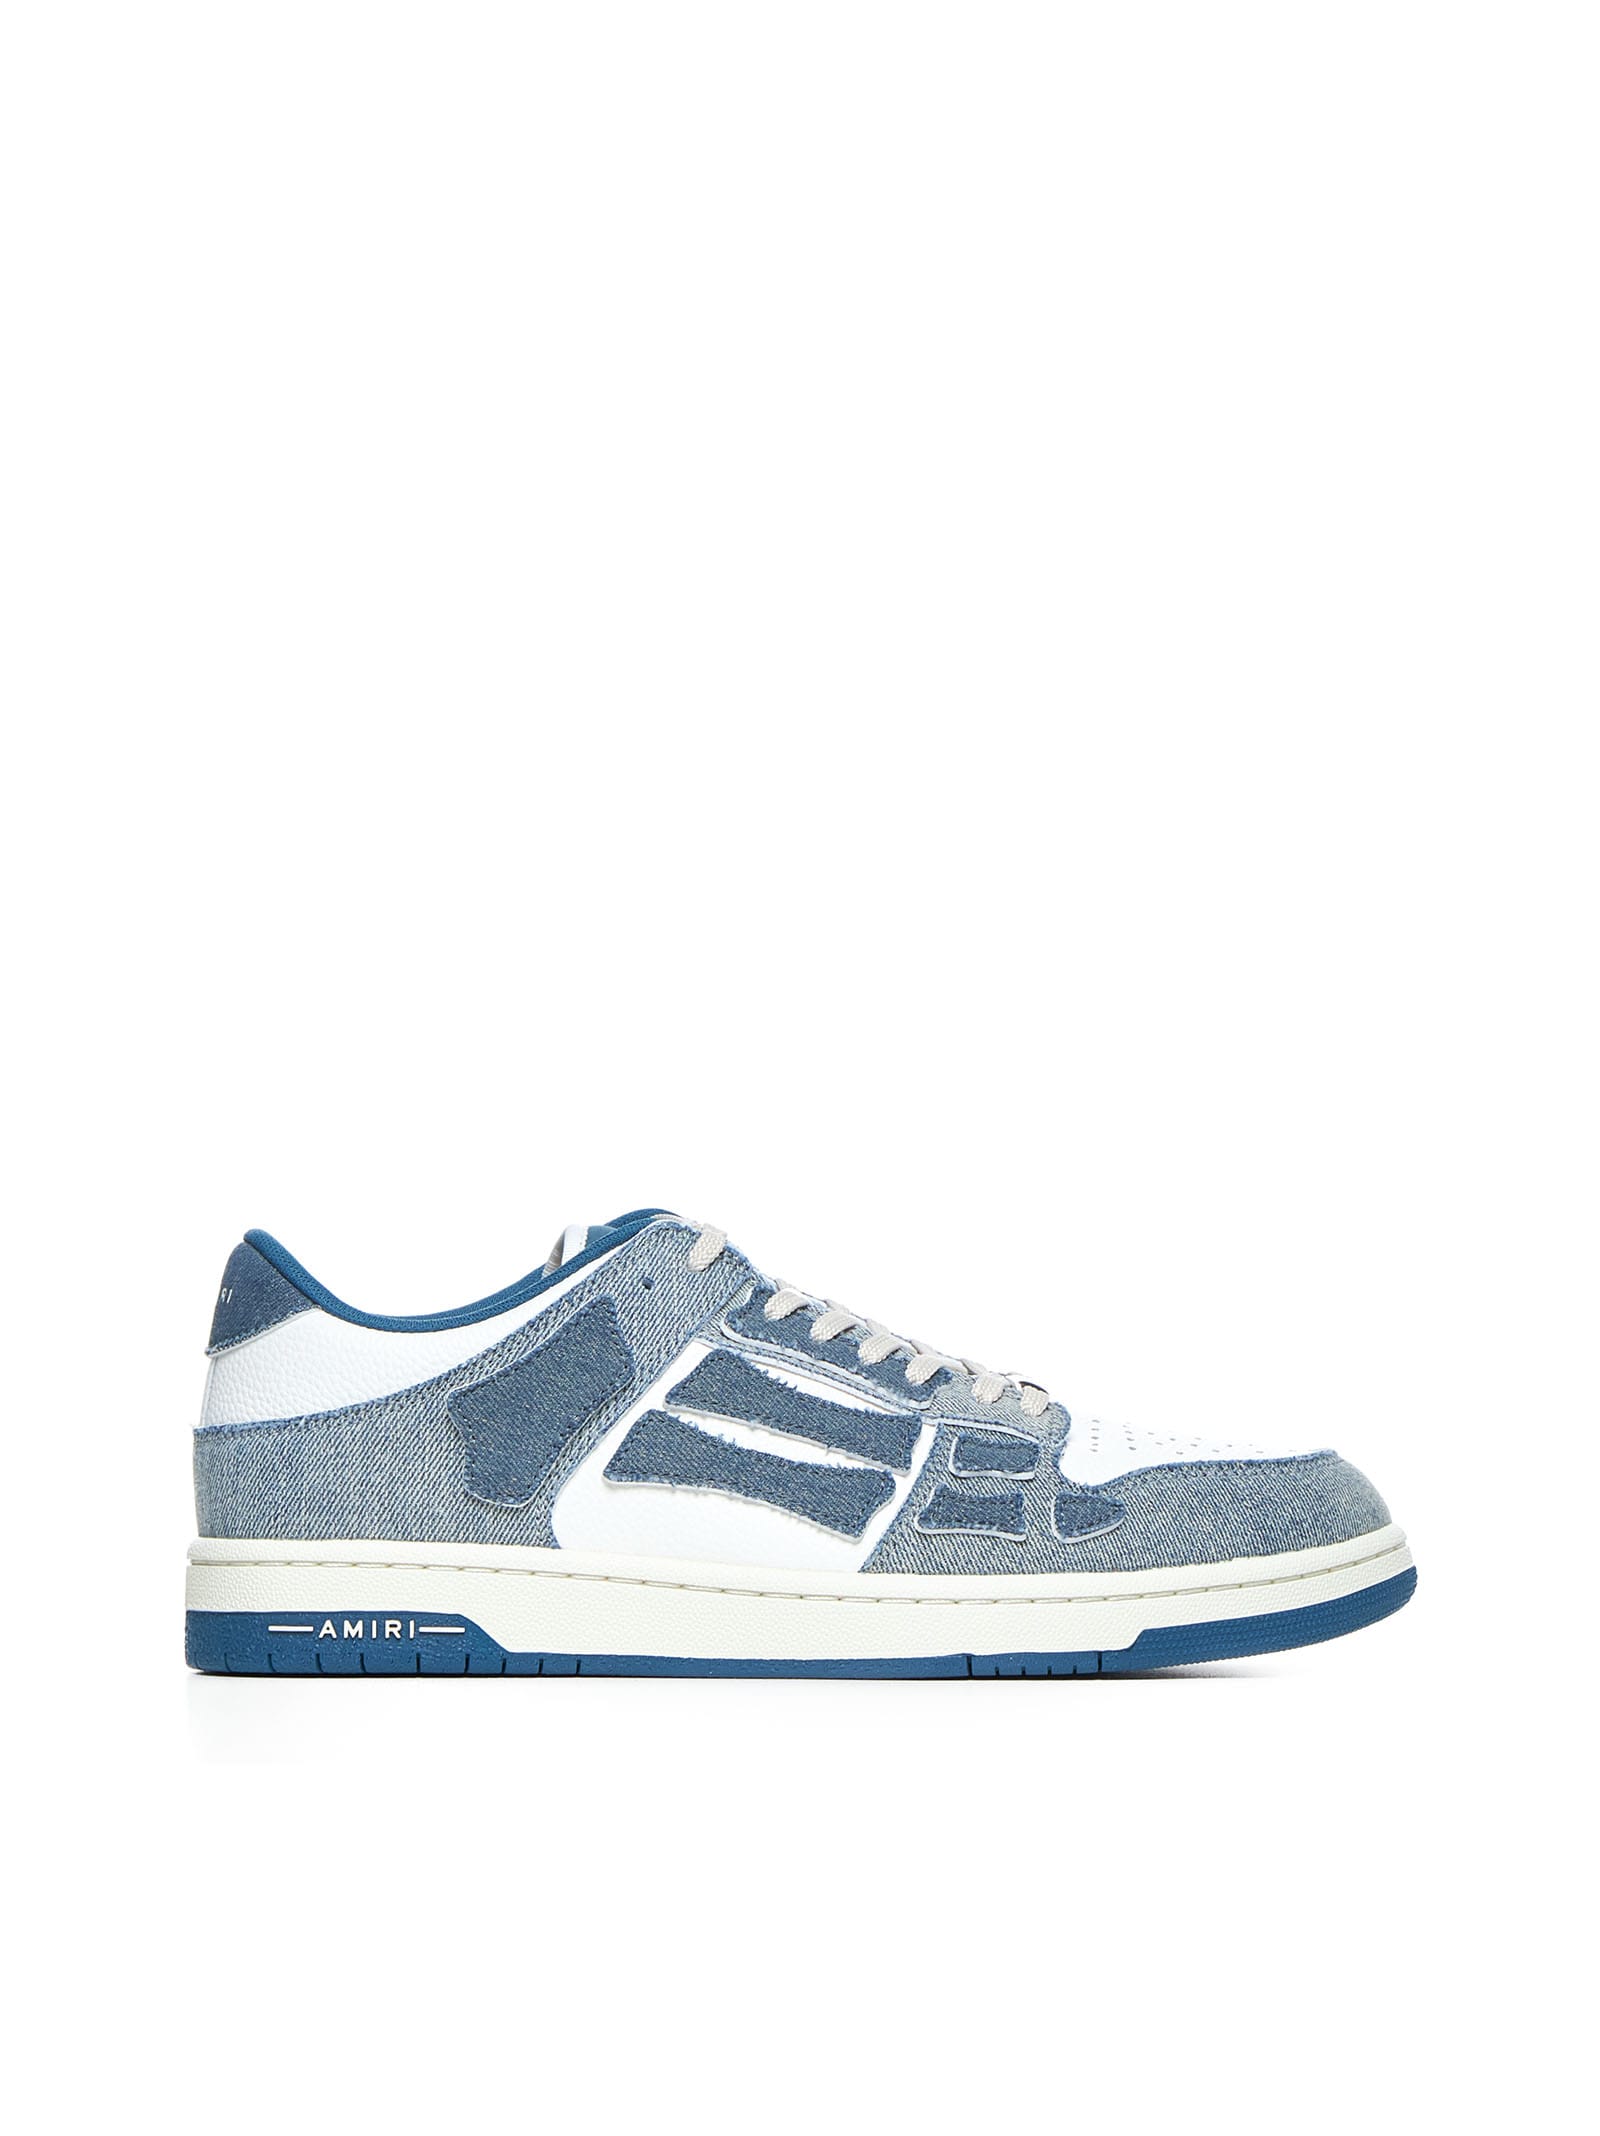 Amiri Sneakers In Blue